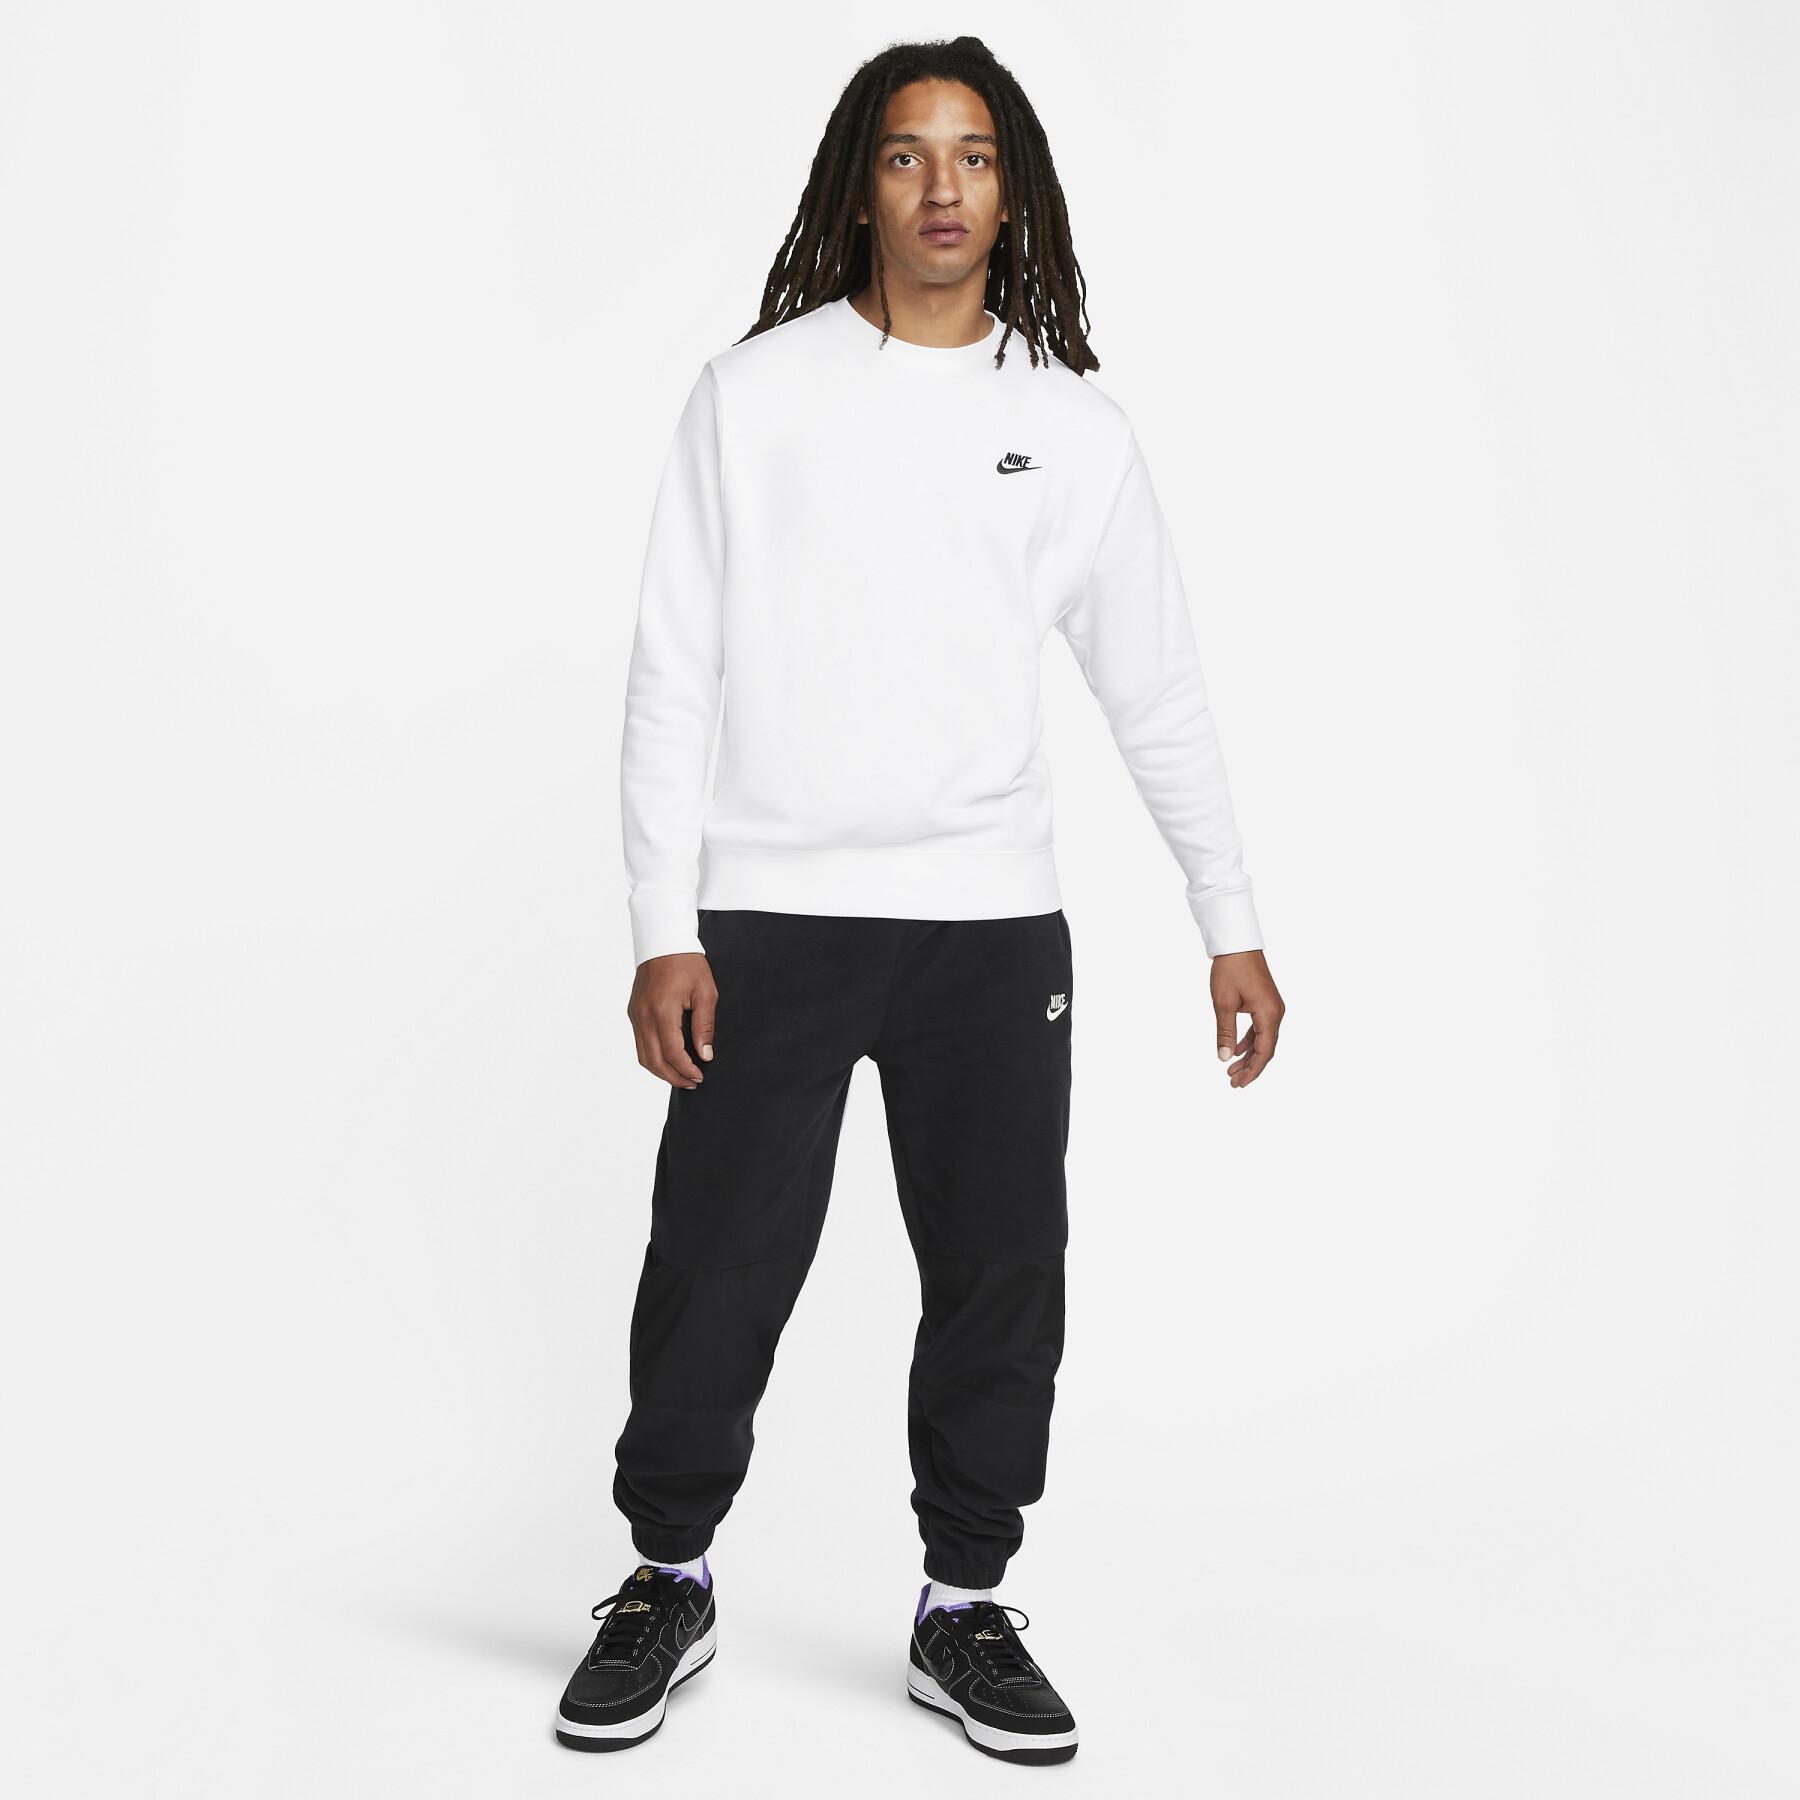 Sweatshirt à capuche Nike Club